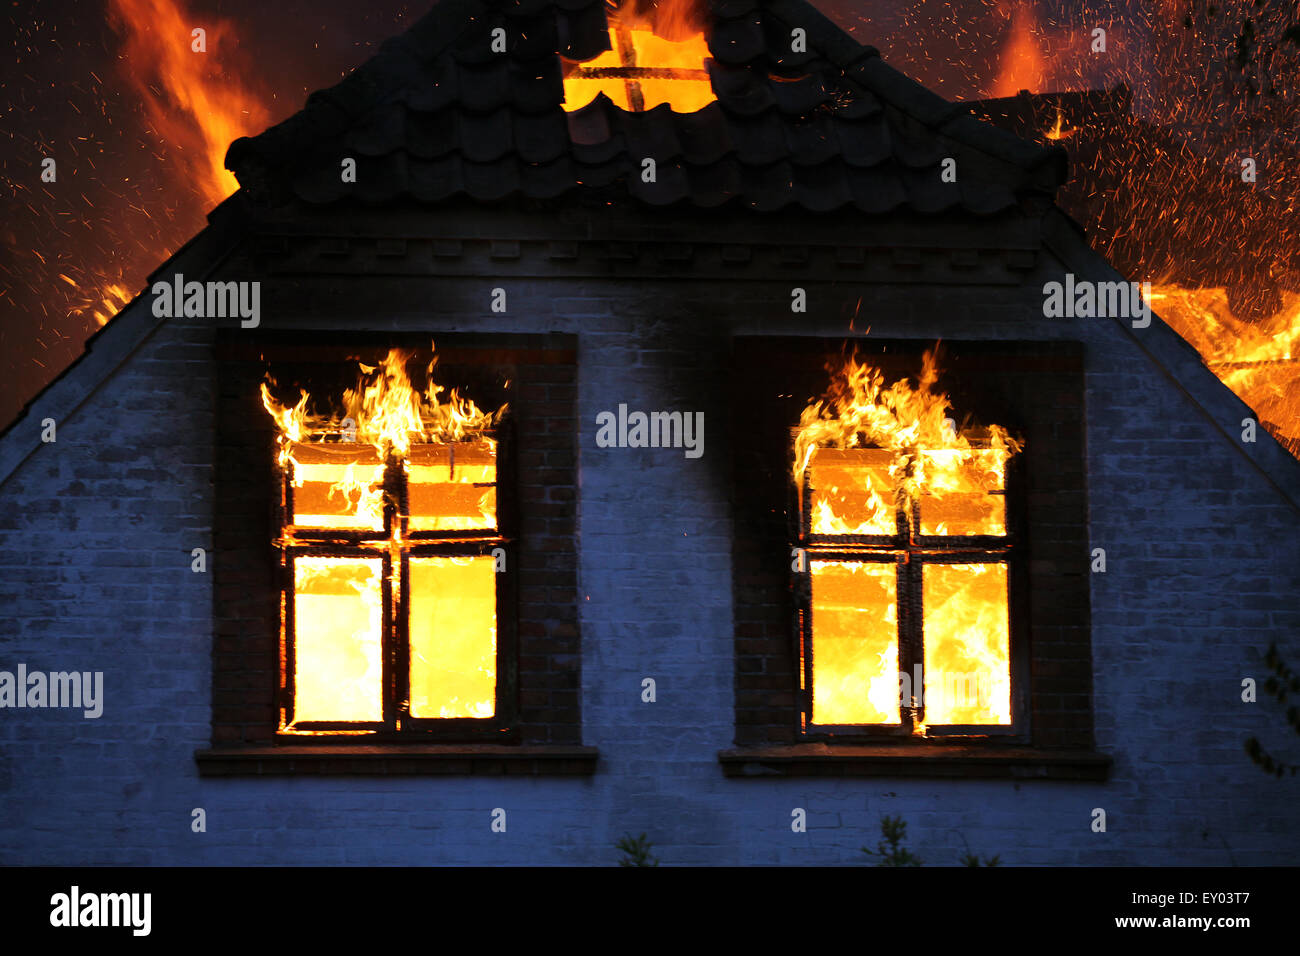 Casa en el fuego. Arde en llamas salvajes. Blaze peligrosas Foto de stock